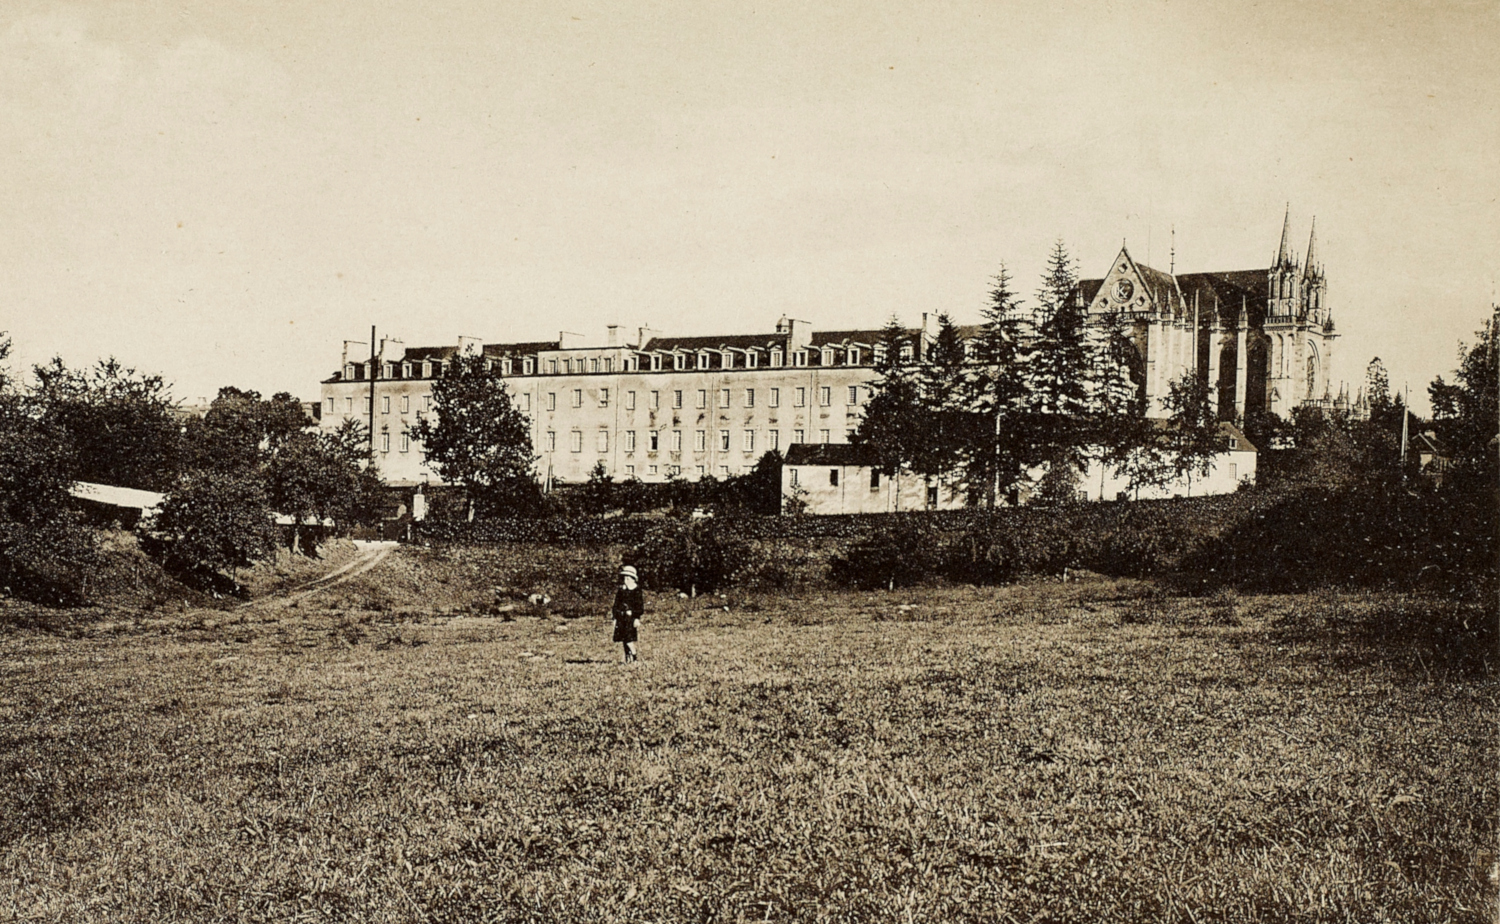 L’asile de Léhon, près de Dinan, première moitié du XXe siècle (Carte postale). Musée de Bretagne, 970.0049.7396.2.